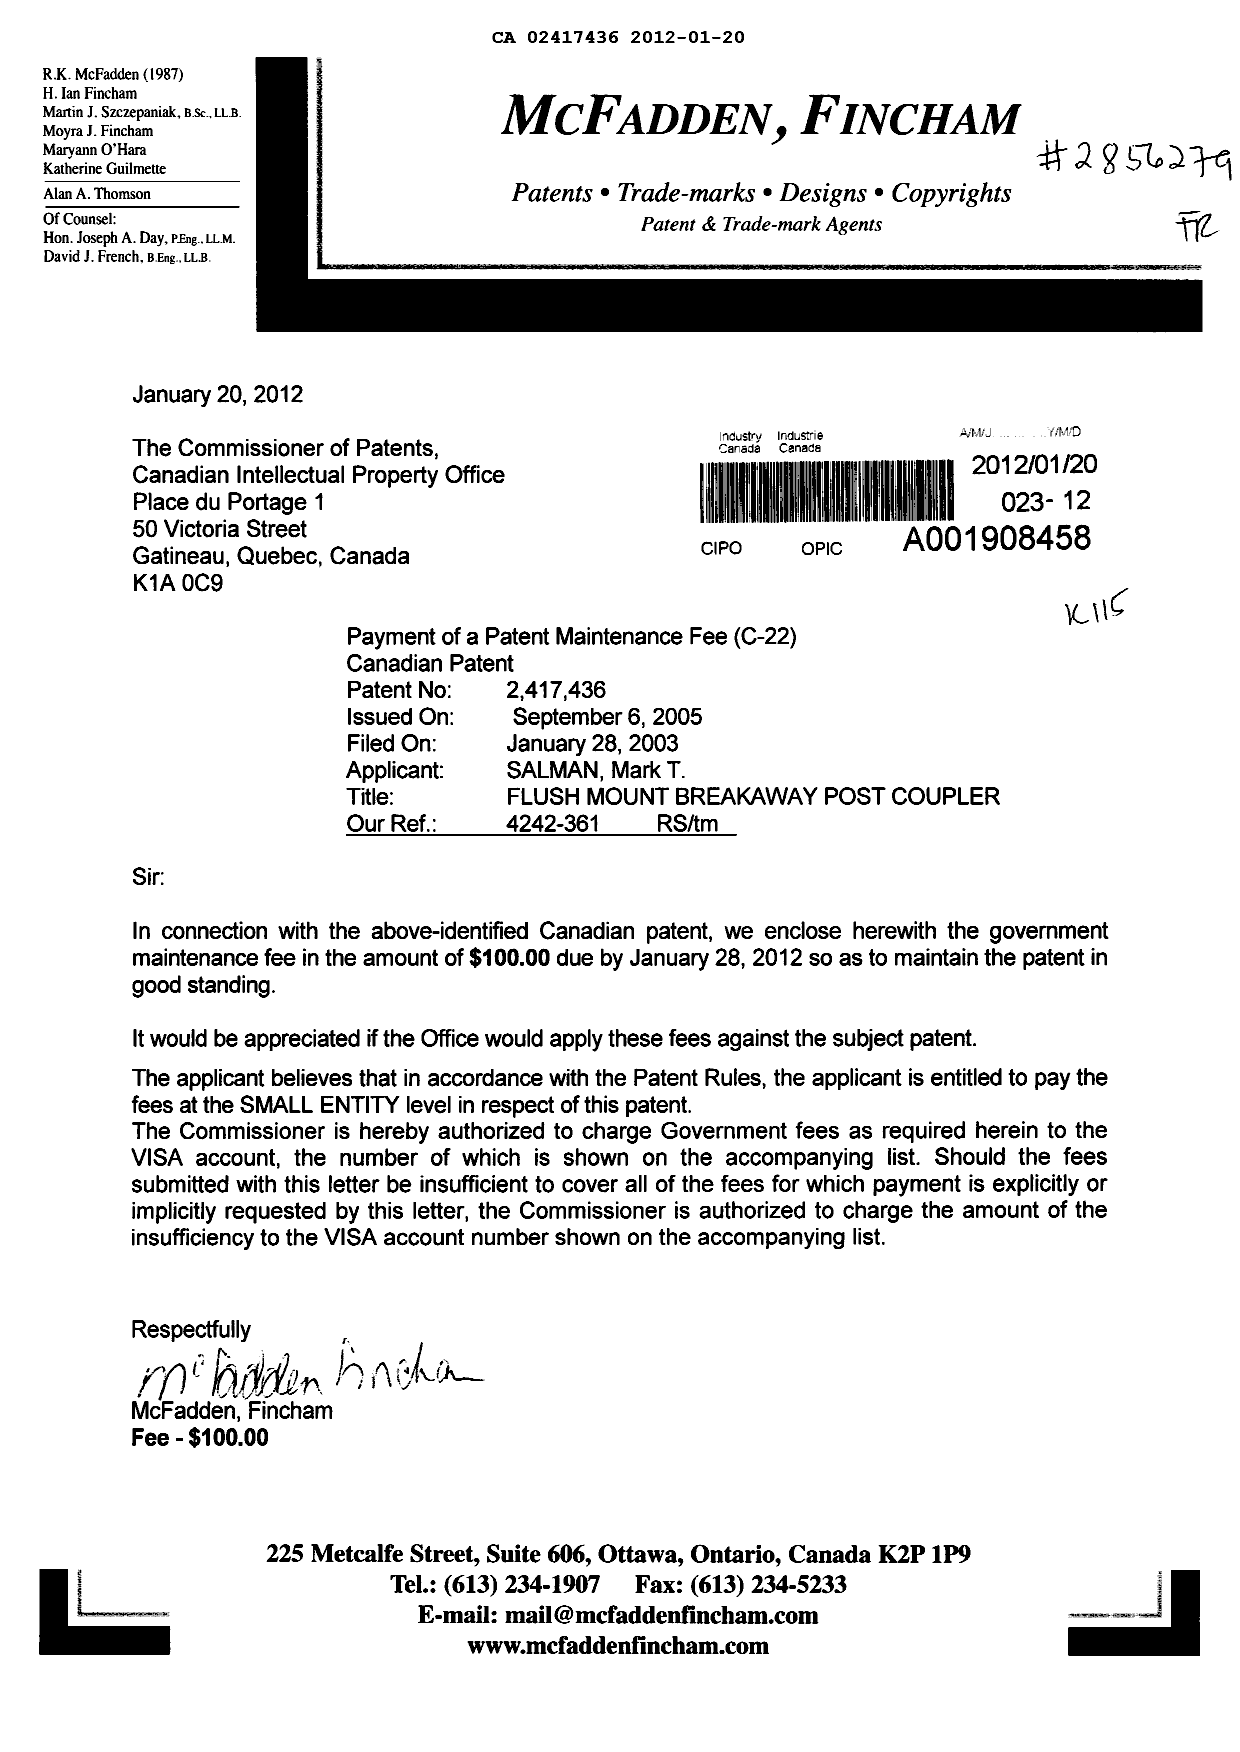 Document de brevet canadien 2417436. Taxes 20120120. Image 1 de 1